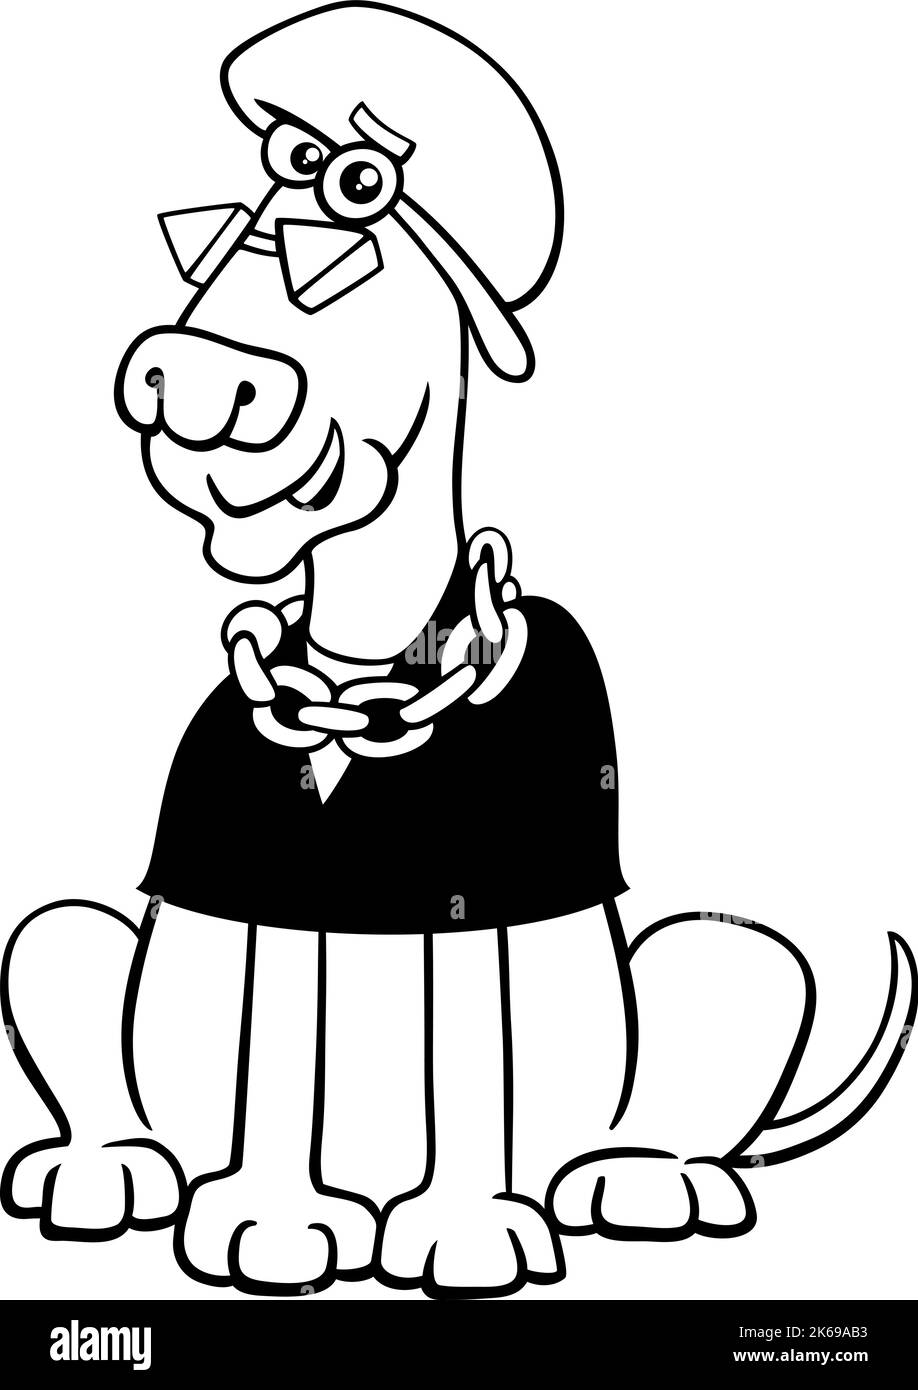 Schwarz-Weiß-Cartoon-Illustration von lustigen exzentrischen Hund Tier Charakter Malseite Stock Vektor